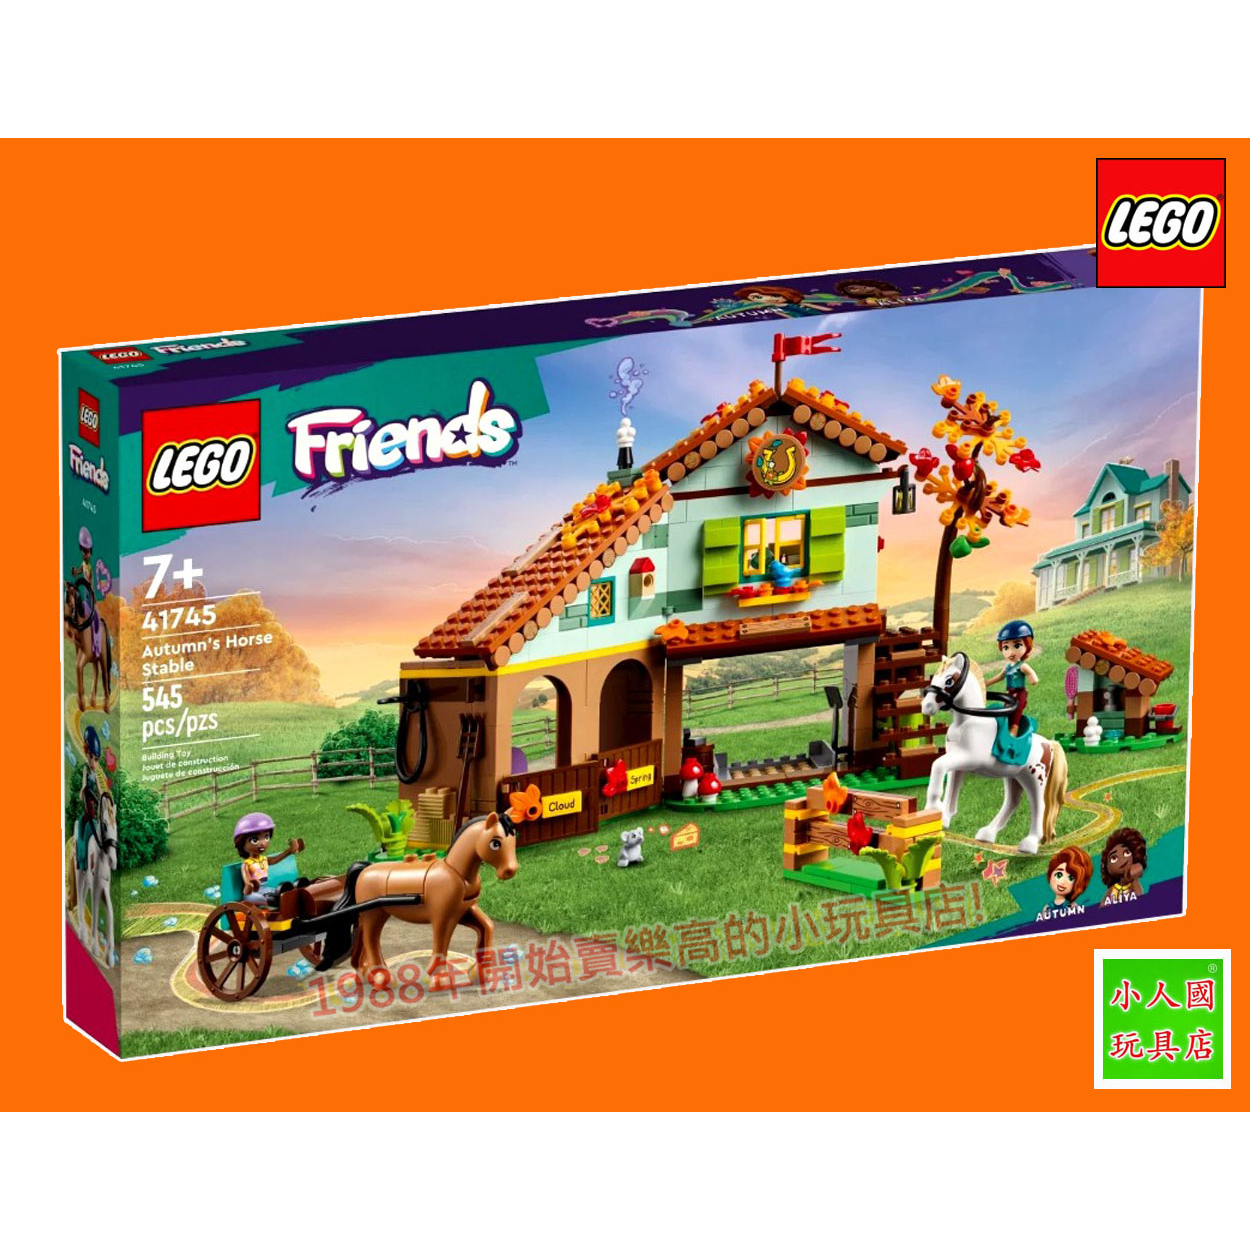 樂高7折出清LEGO 41745秋天的馬厩 FRIENDS好朋友 樂高公司貨 永和小人國玩具店